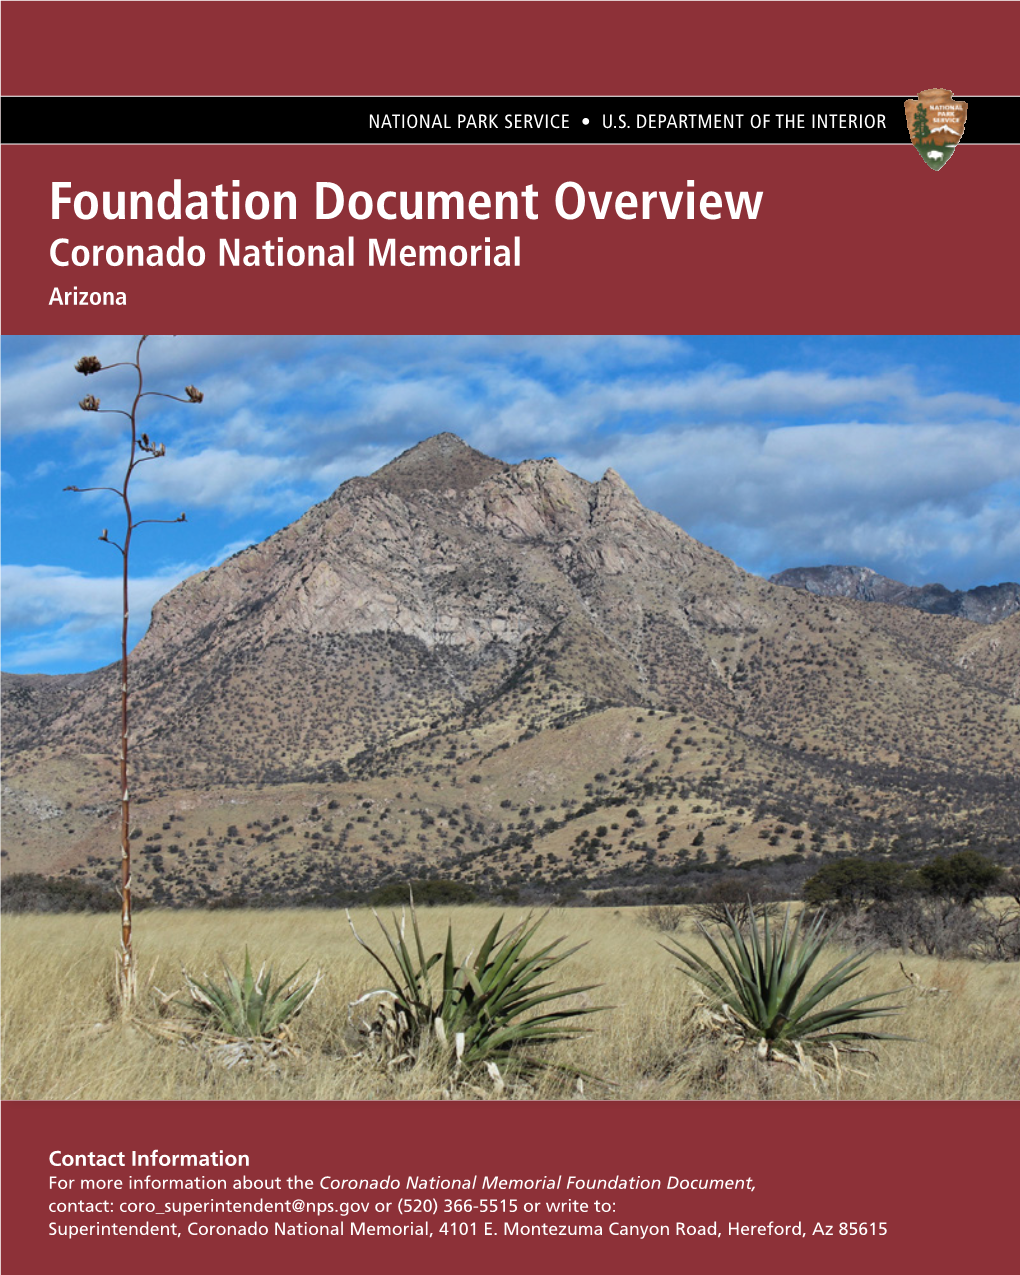 Coronado National Memorial Foundation Document Overview